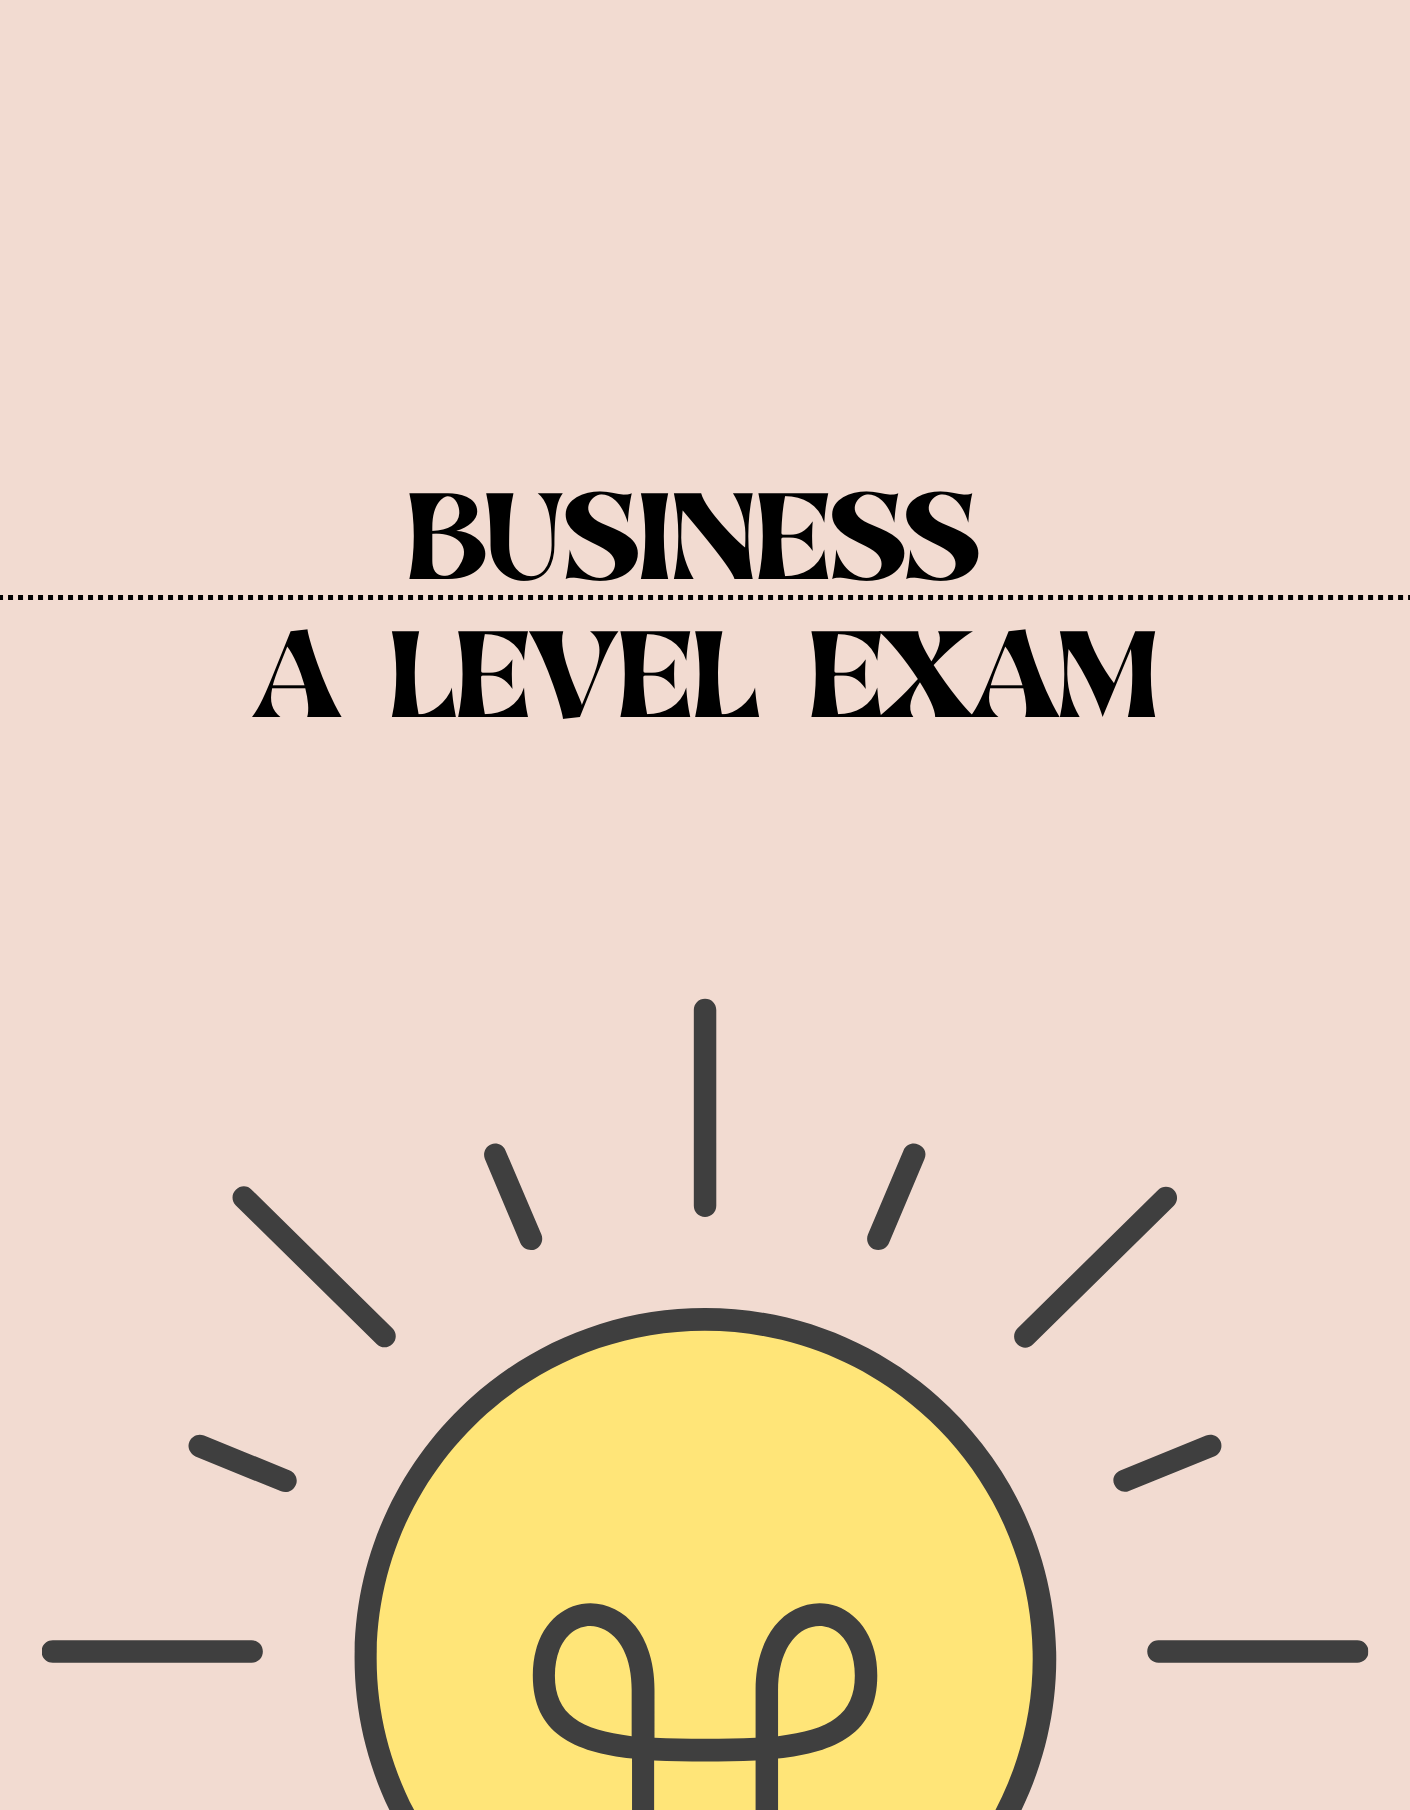 A Level - Business Exam - Exam Centre Birmingham